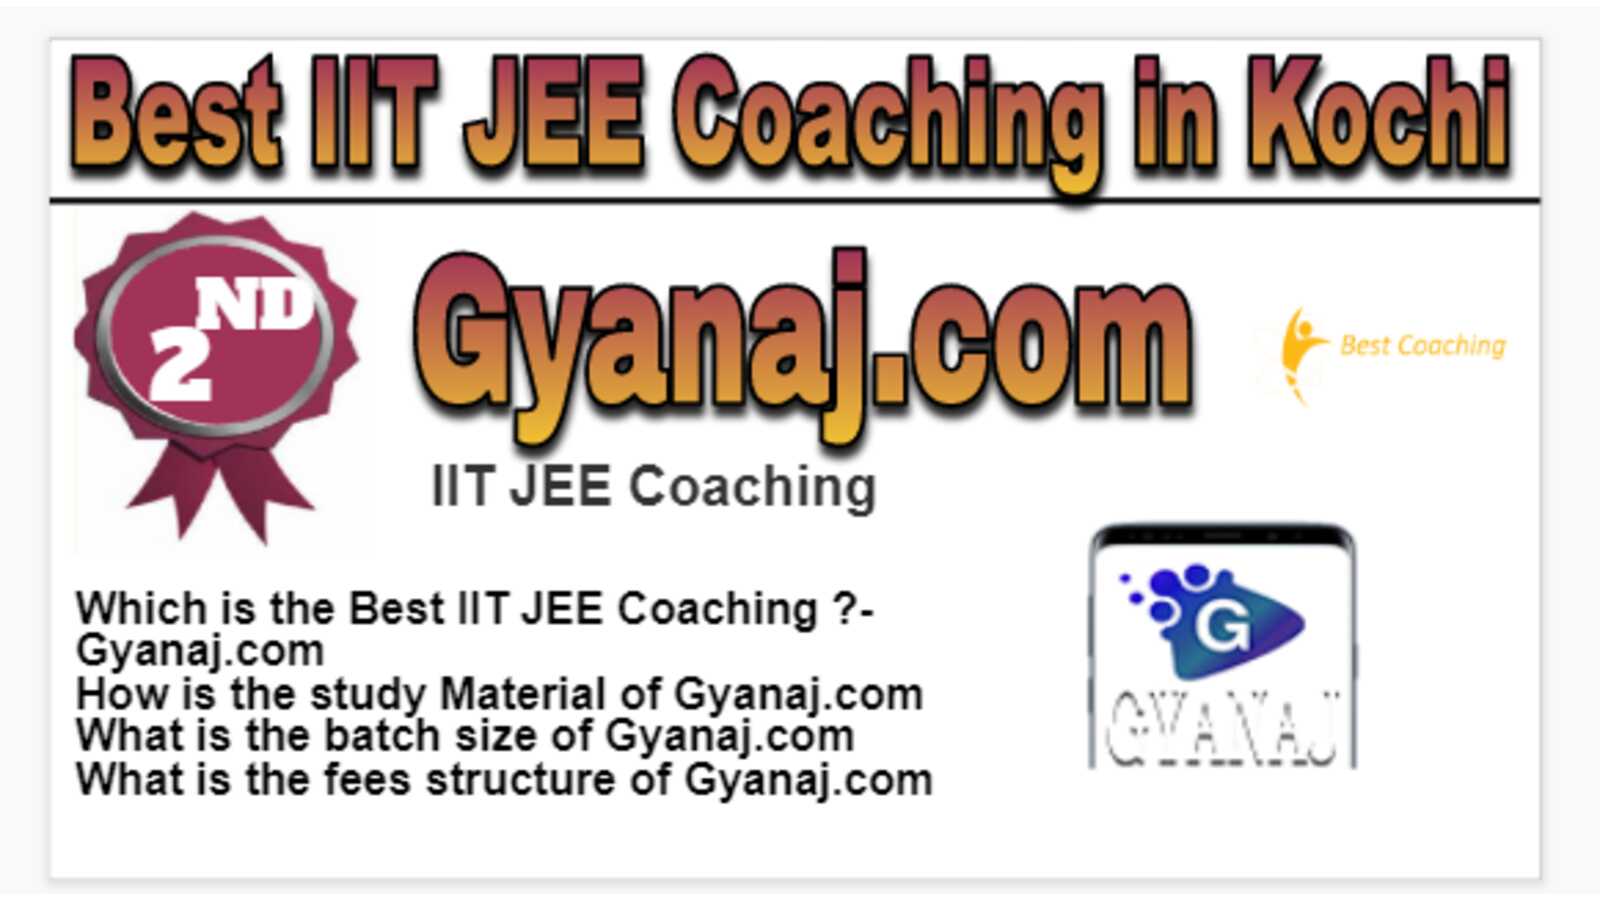 Rank 2 Best IIT JEE Coaching in Kochi